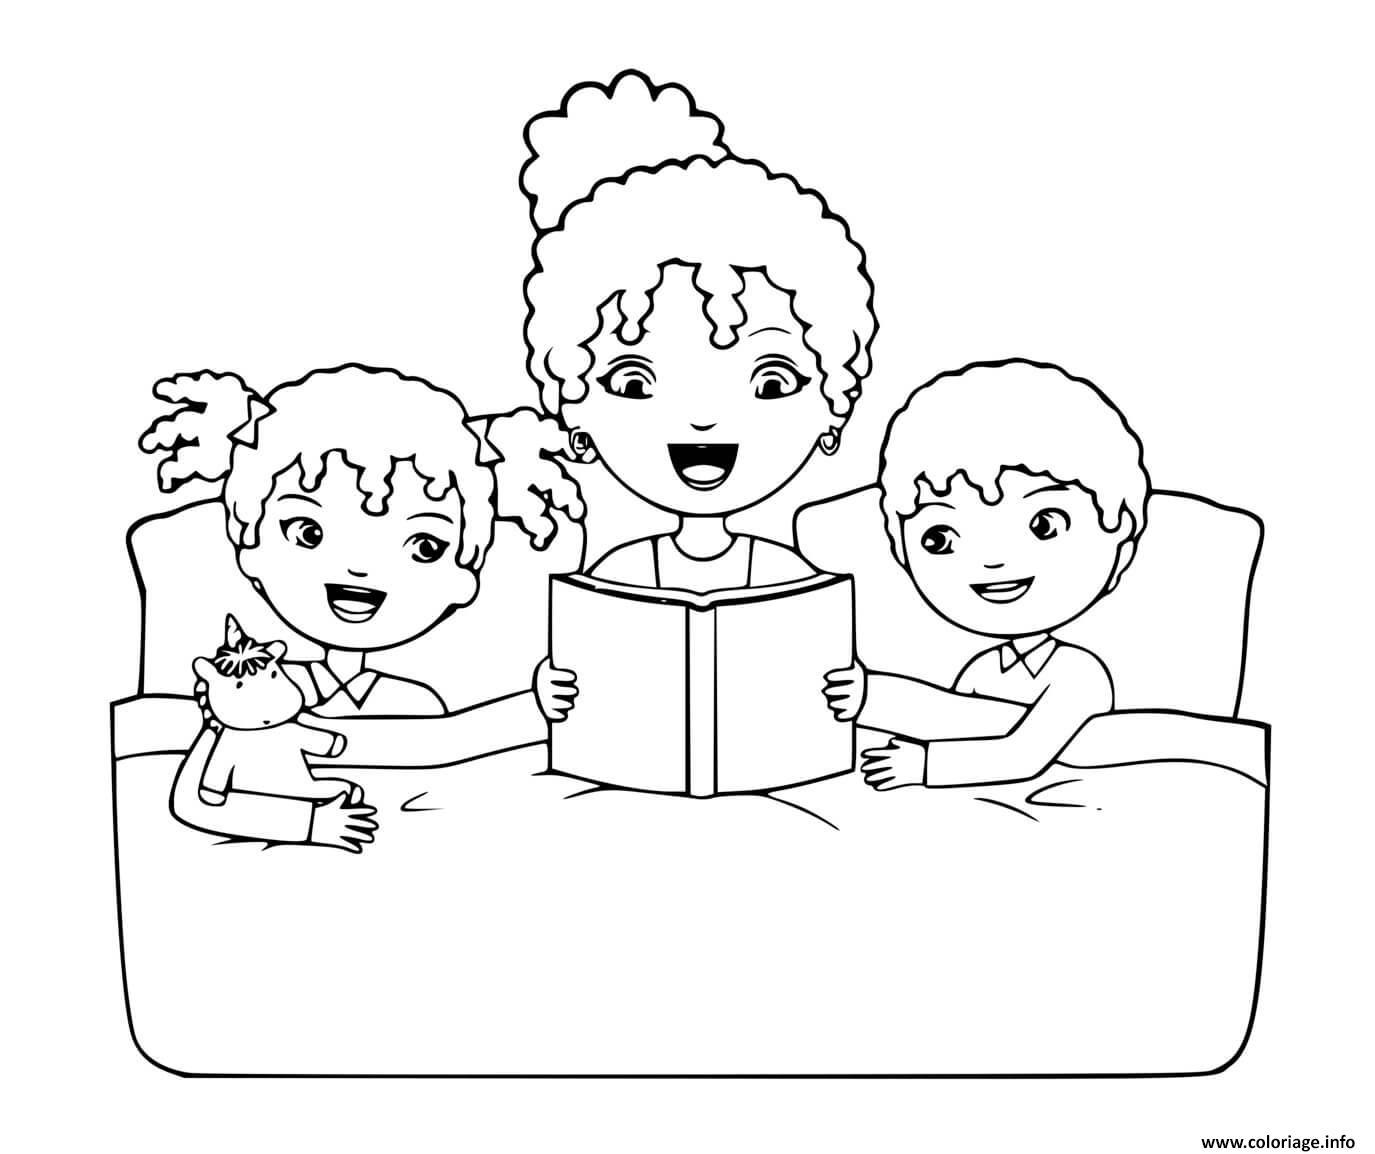 Image d'une mère et ses deux enfants en train de lire avant de dormir